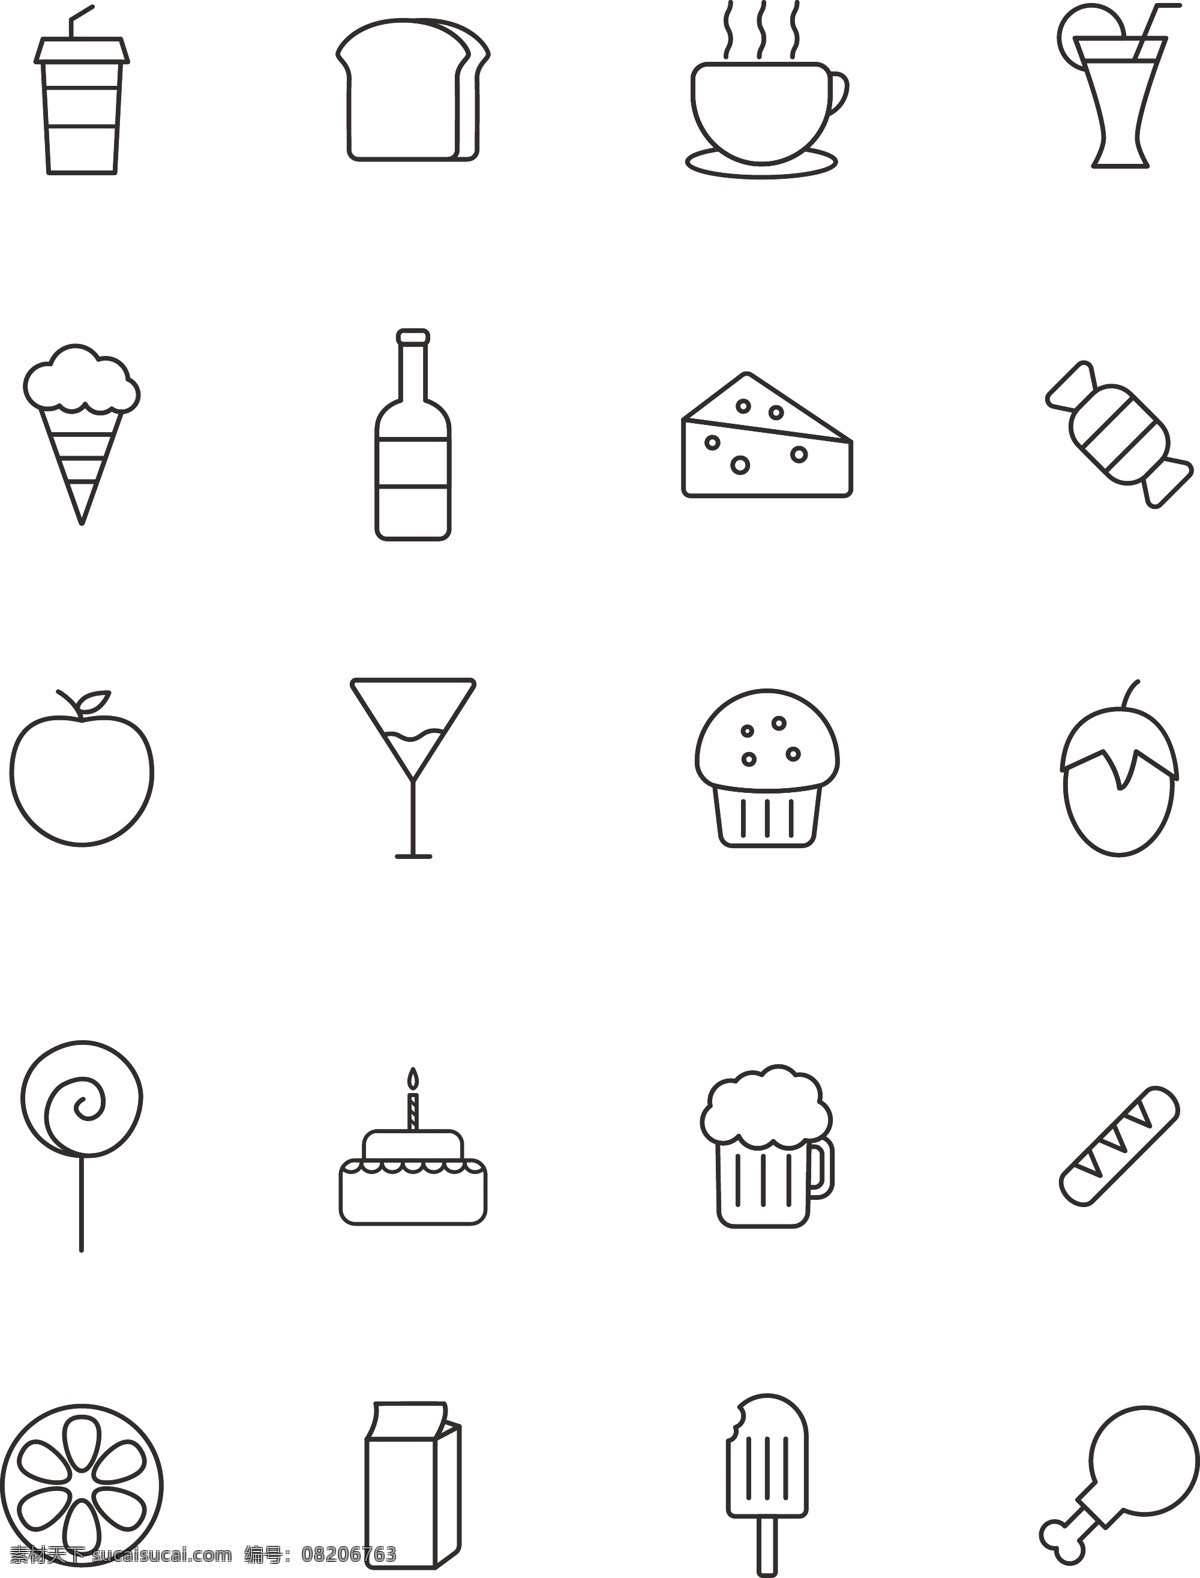 咖啡 饮品 店 icon 图标 黑白 简约 商用 元素 咖啡店 饮品店 可商用